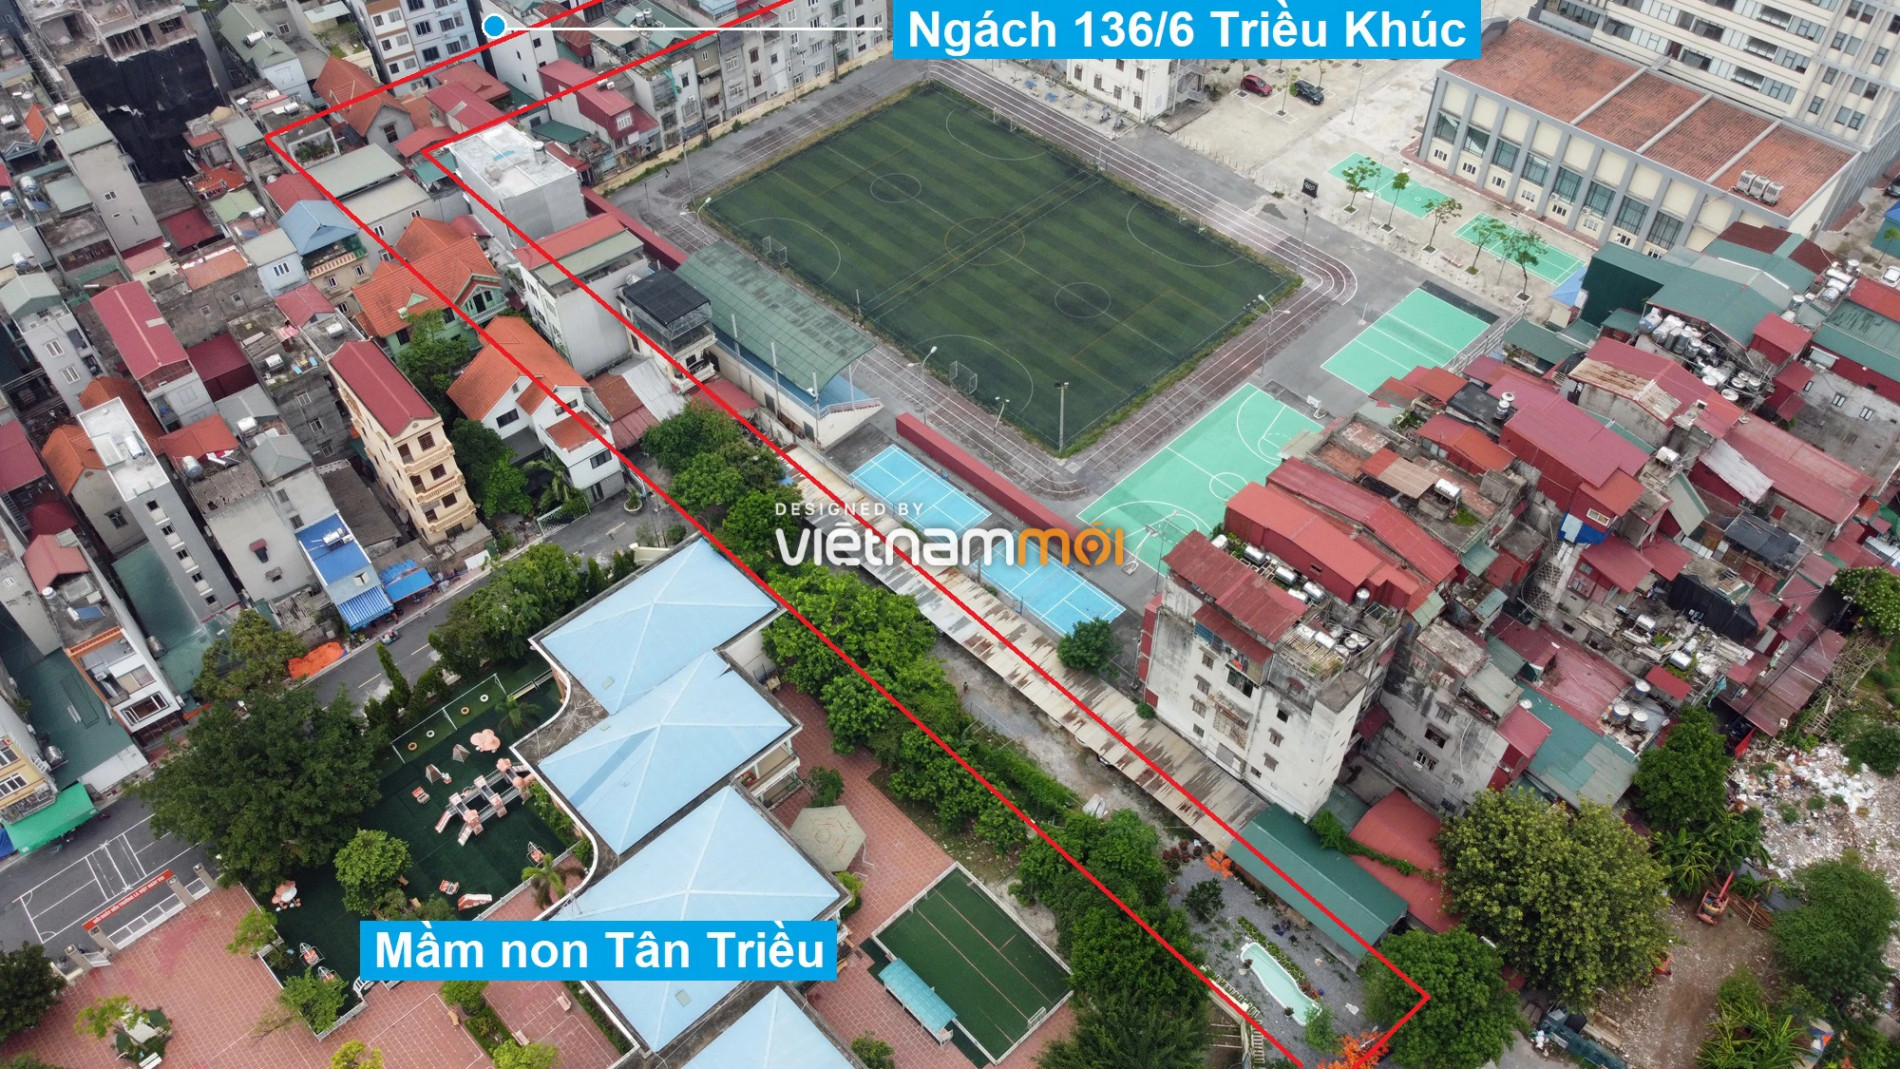 Những khu đất sắp thu hồi để mở đường ở xã Tân Triều, Thanh Trì, Hà Nội (phần 10) - Ảnh 4.